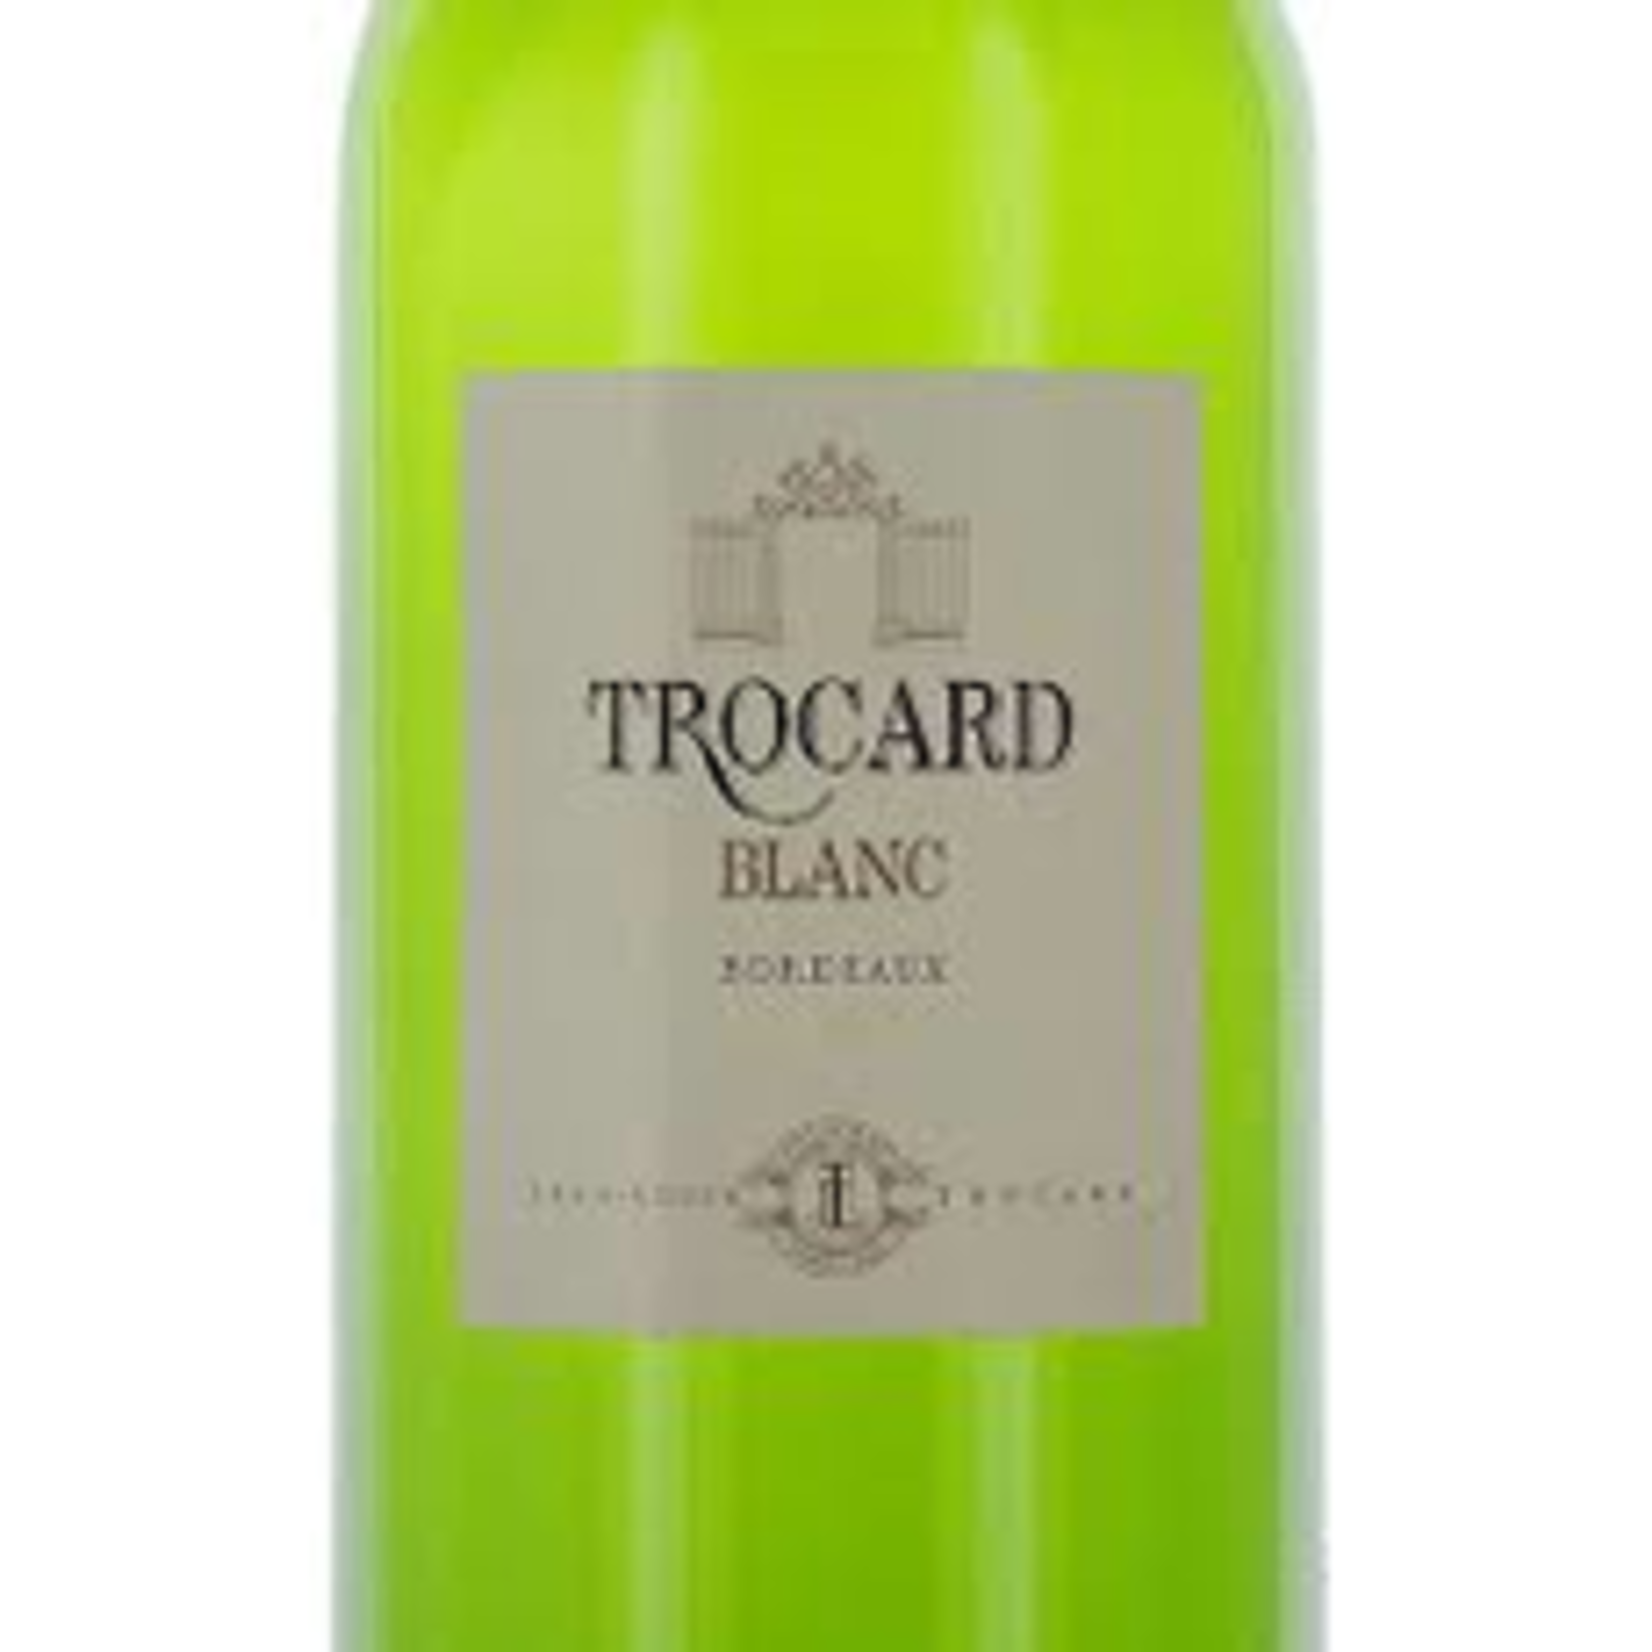 Wine Jean-Louis Trocard Bordeaux Blanc 2019